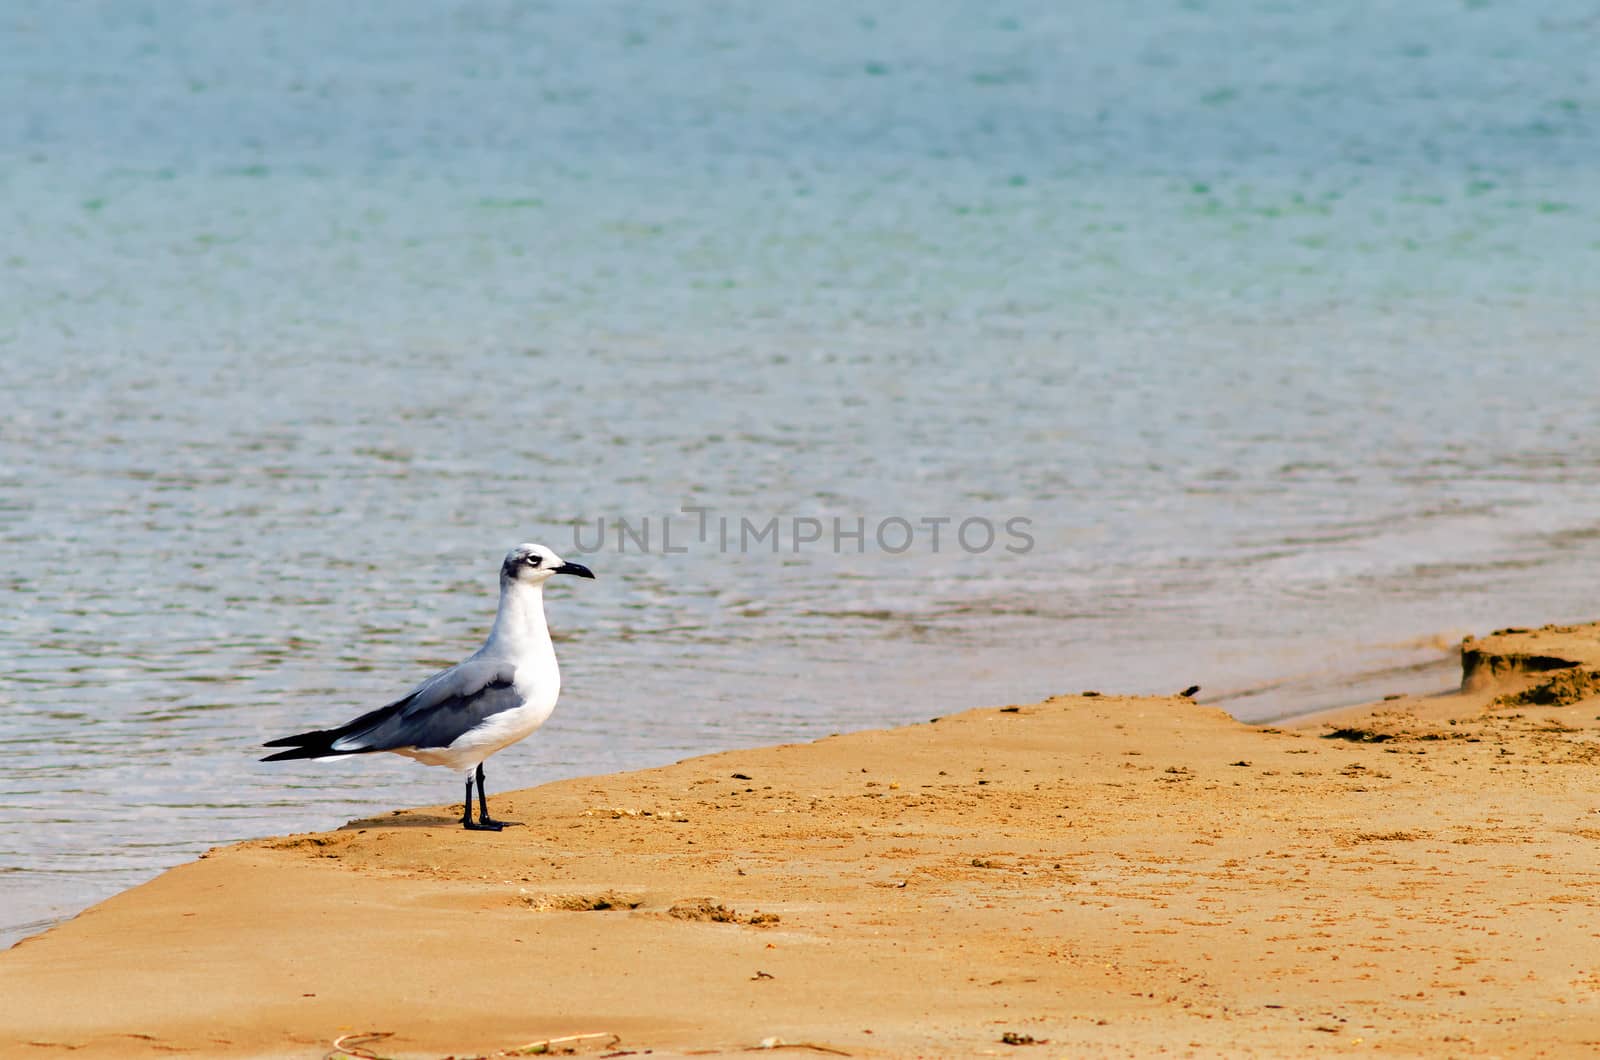 Bird on a Beach by jkraft5